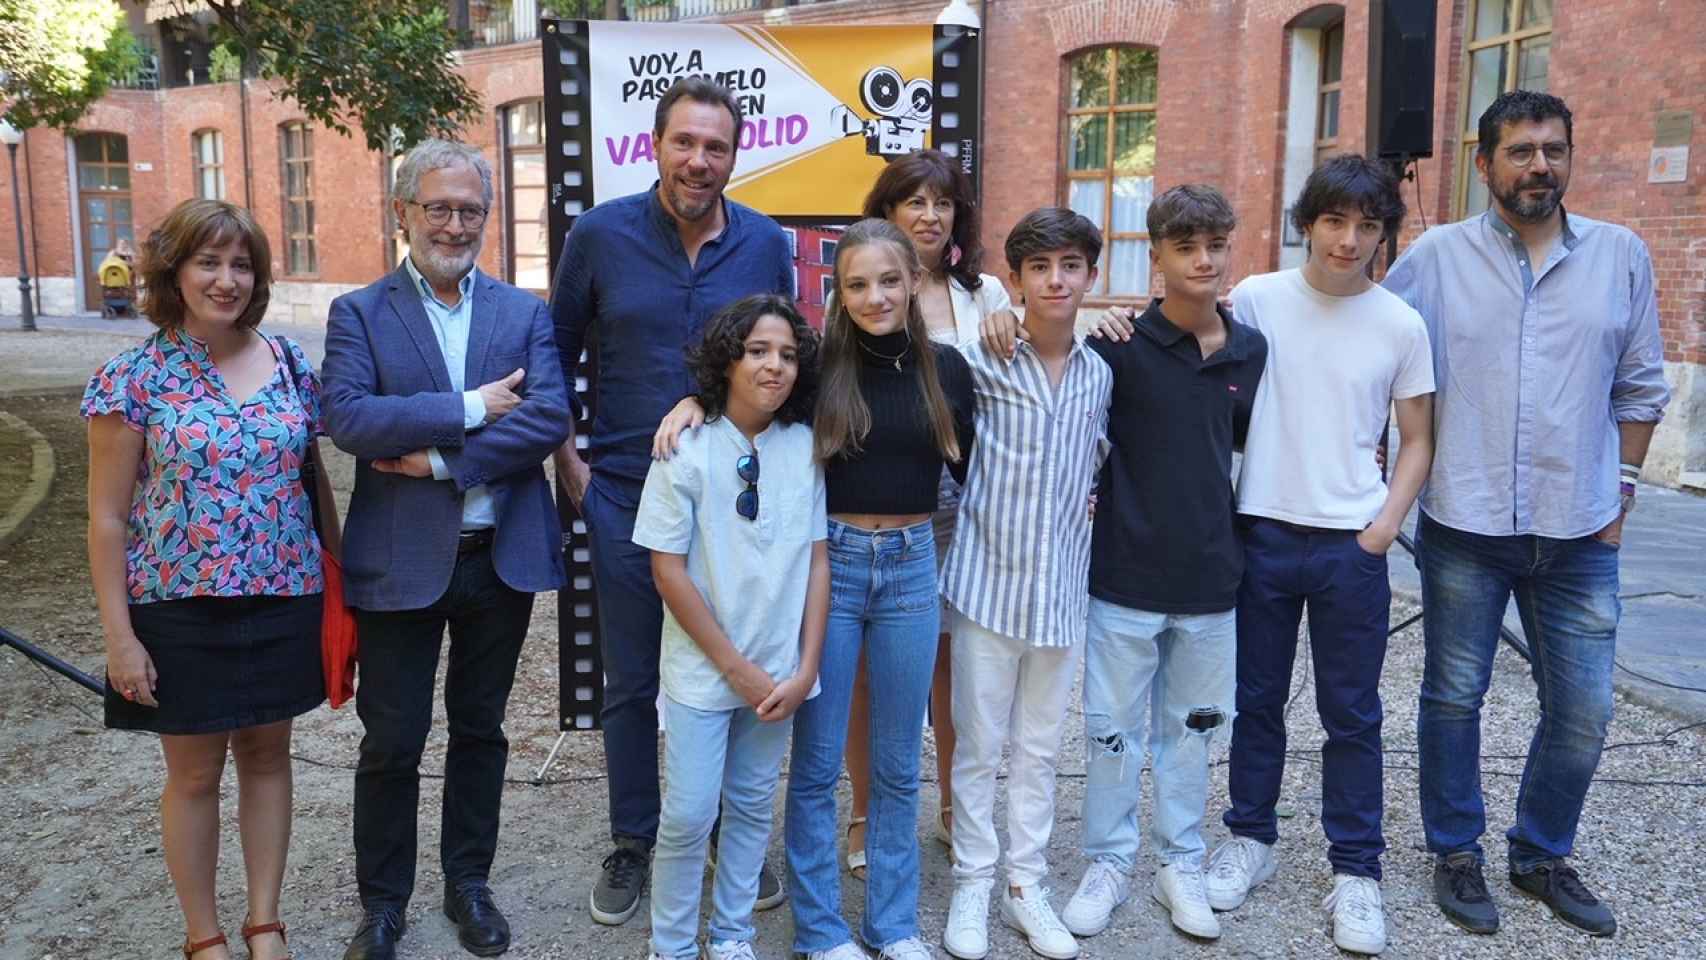 El alcalde de Valladolid, Óscar Puente, presenta la ruta 'Voy a pasármelo bien' acompañado de actores de la película, este sábado.